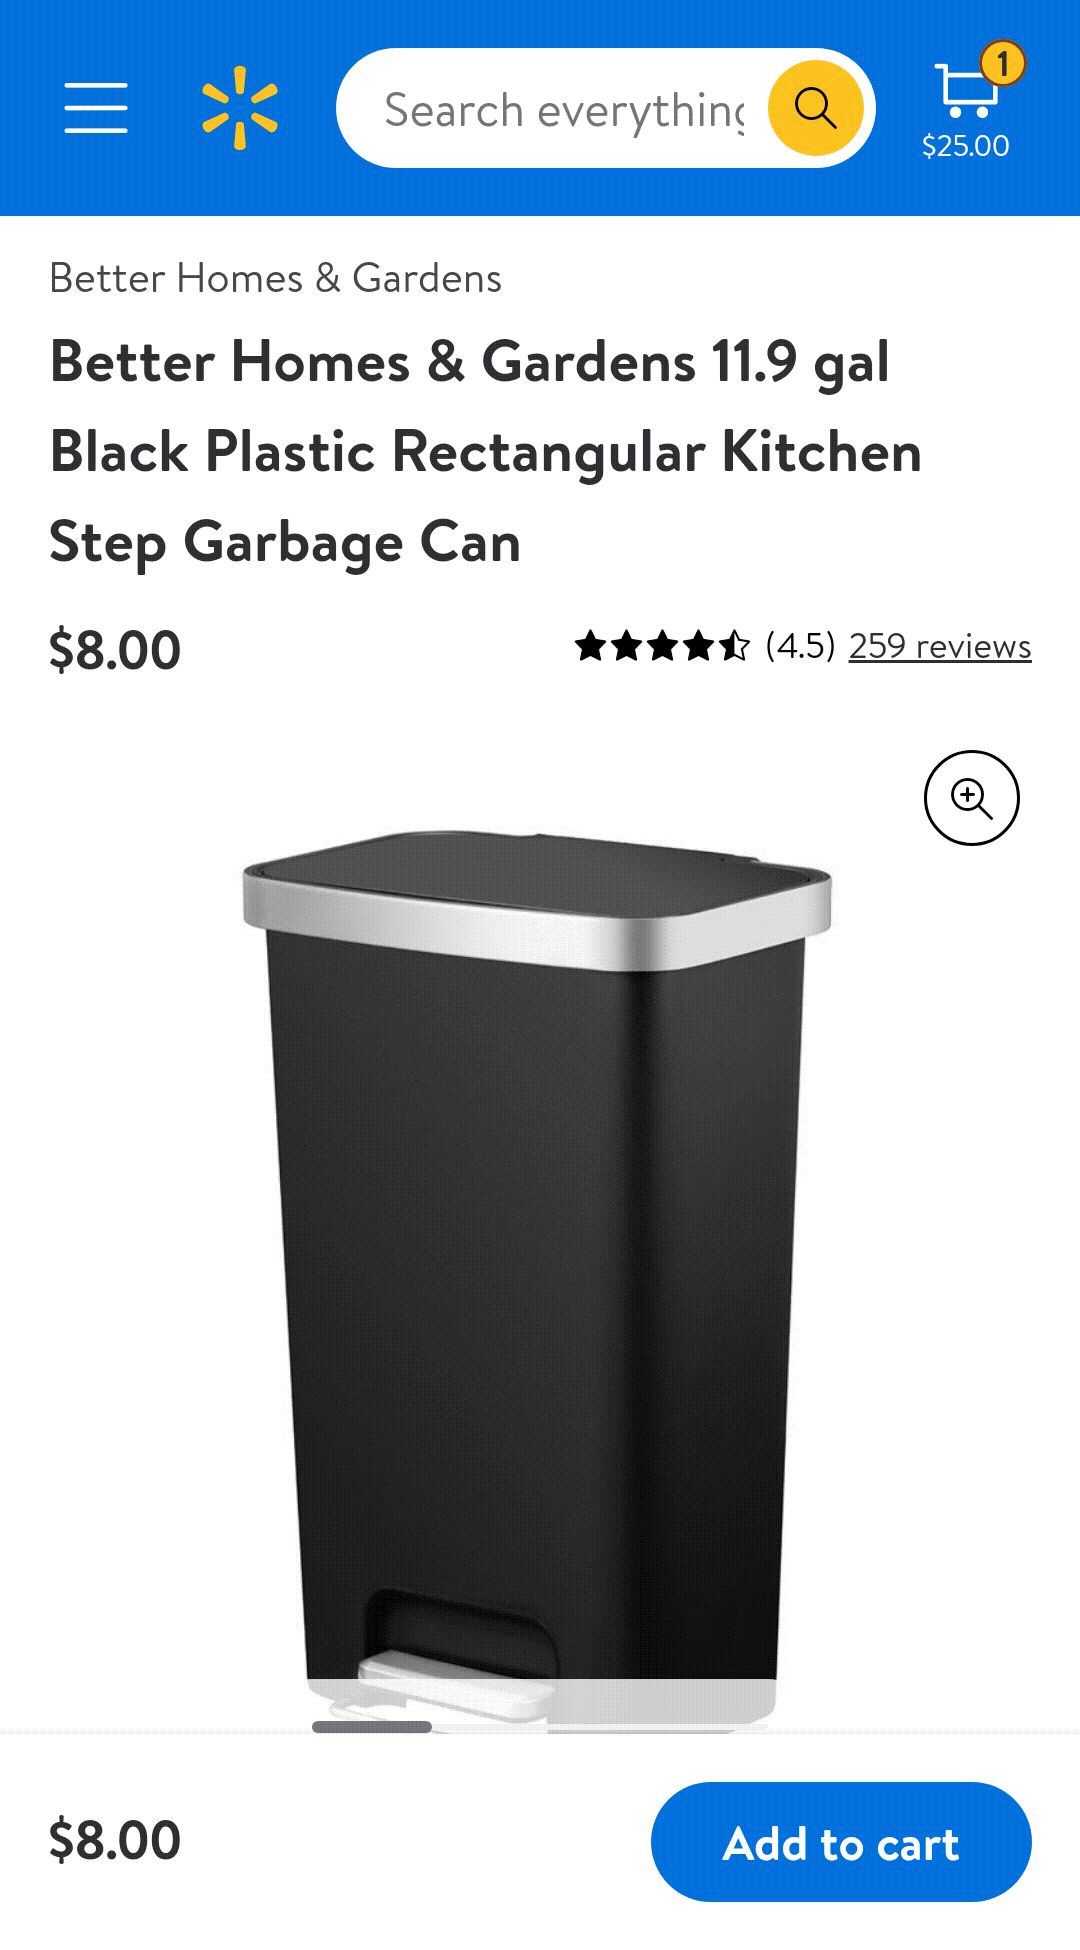 12加仑垃圾桶Better Homes & Gardens 11.9 gal Black Plastic Rectangular Kitchen Step Garbage Can - Walmart.com